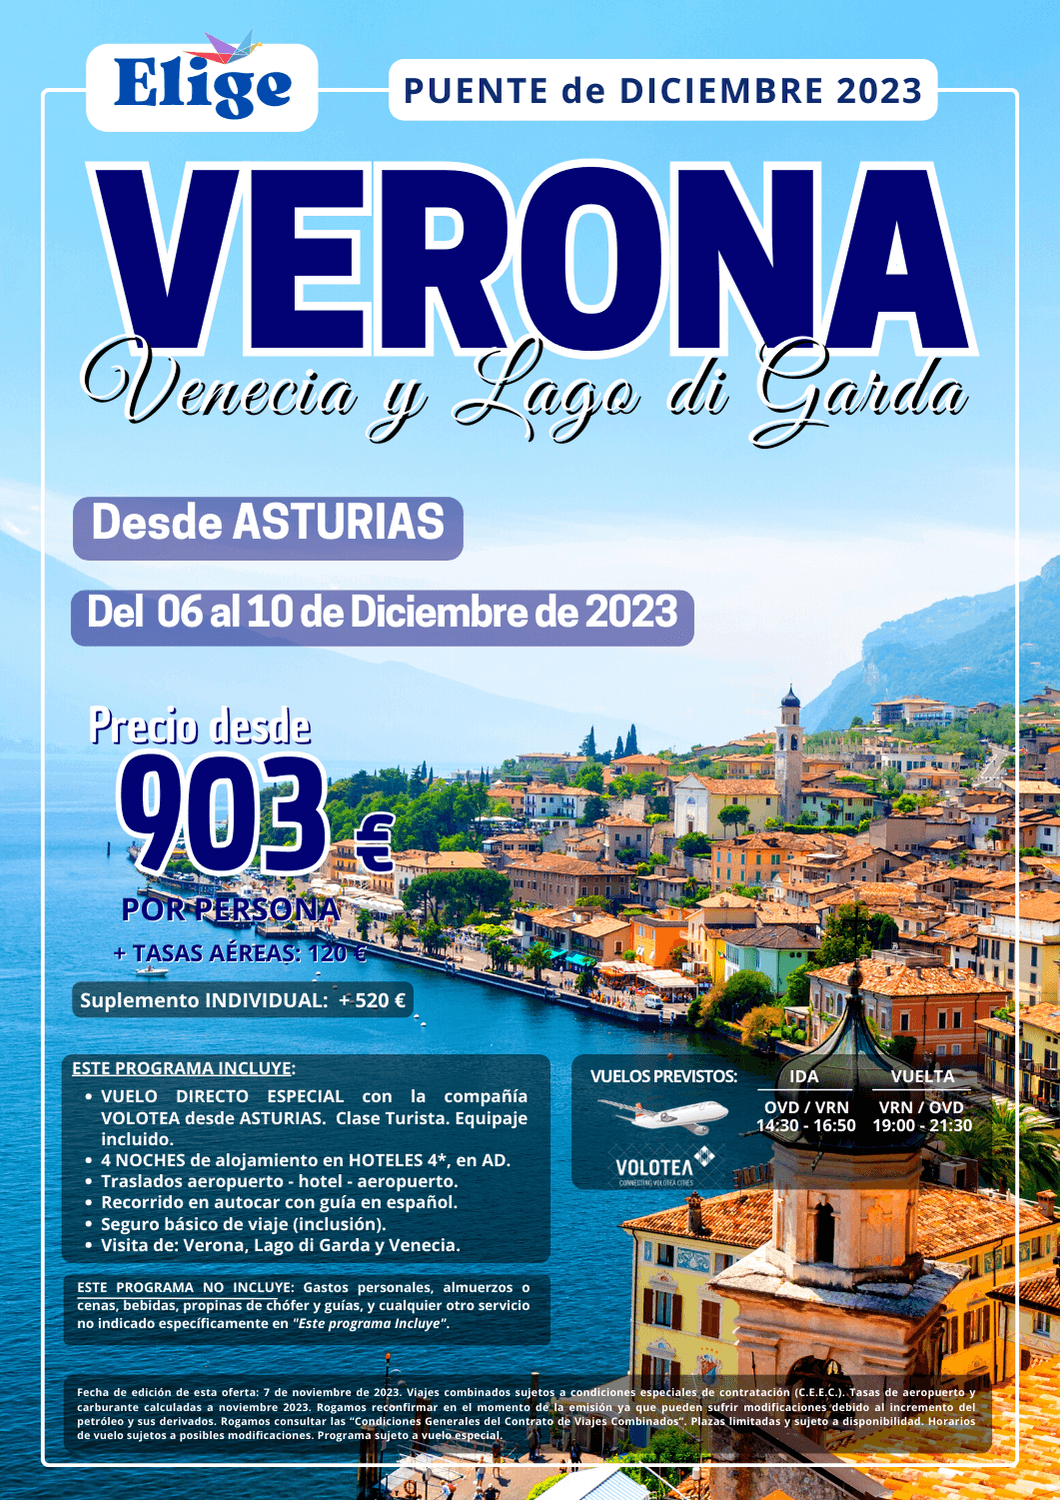 Verona, Venecia y Lago di Garda, Puente de Diciembre 2023, en vuelo directo especial desde Asturias, con hoteles 4*, con visita de Verona, Lago di Garda y Venecia, para Agencias de Viajes con Elige Tu Viaje